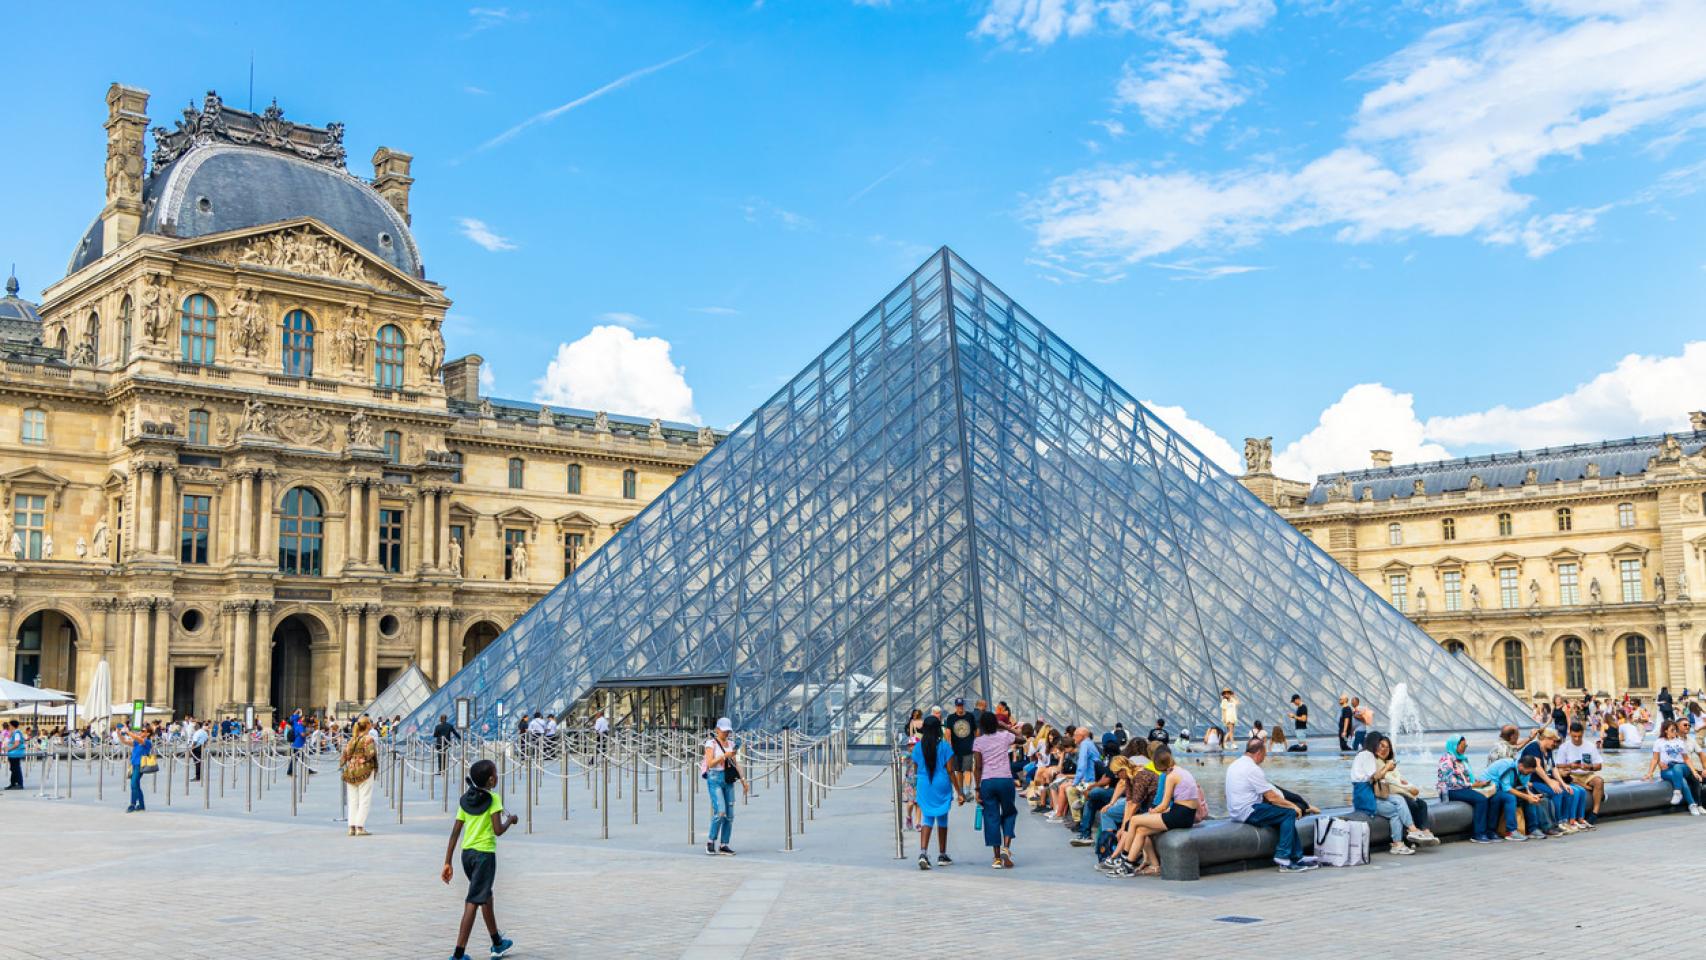 Imagen de la pirámide del Museo del Louvre en Paris, Francia.